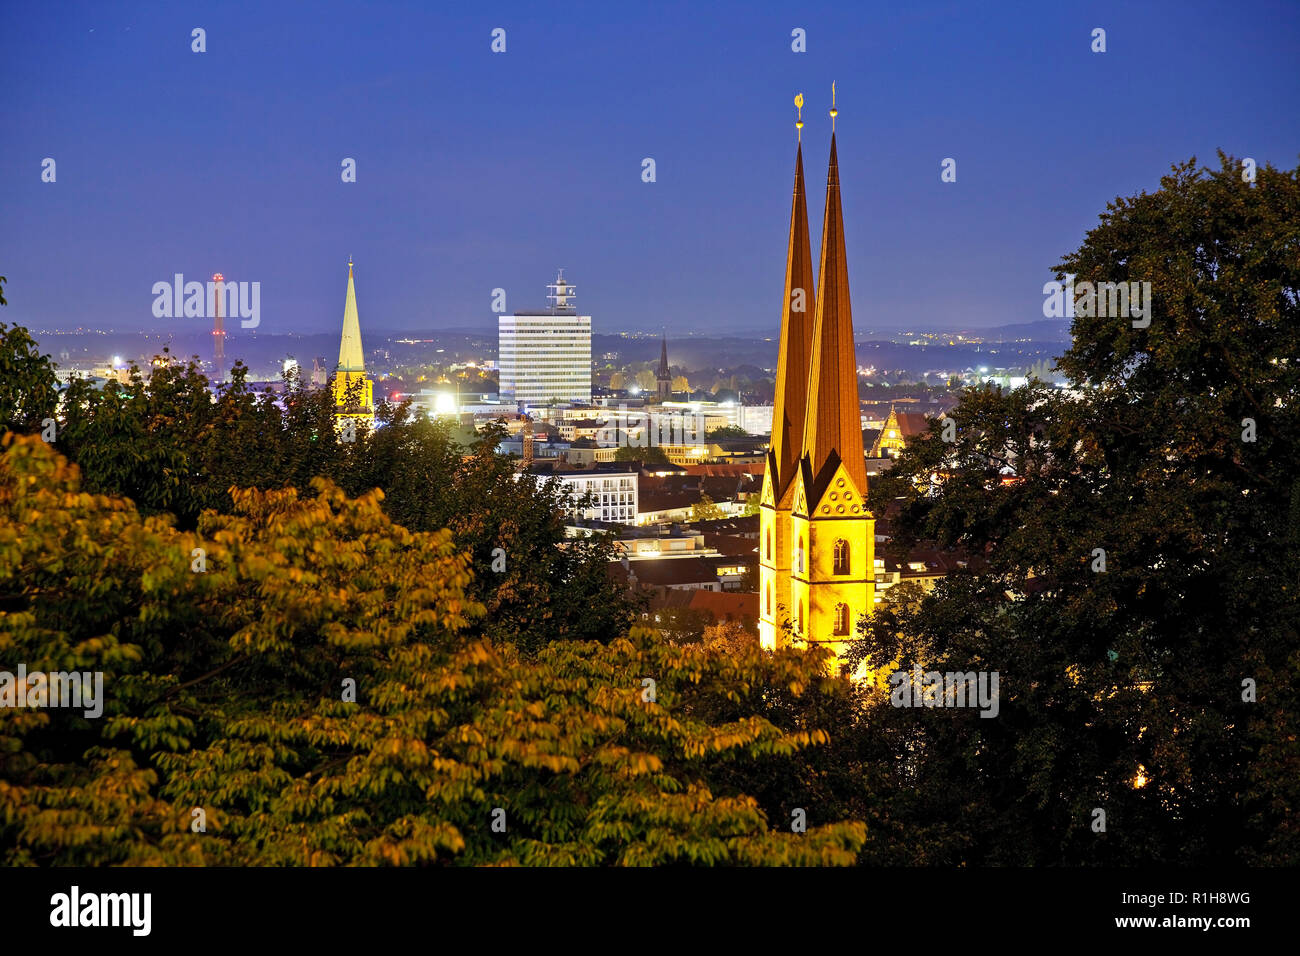 City view with St. Mary's Church, blue hour, Bielefeld, Ostwestfalen-Lippe, North Rhine-Westphalia, Germany Stock Photo